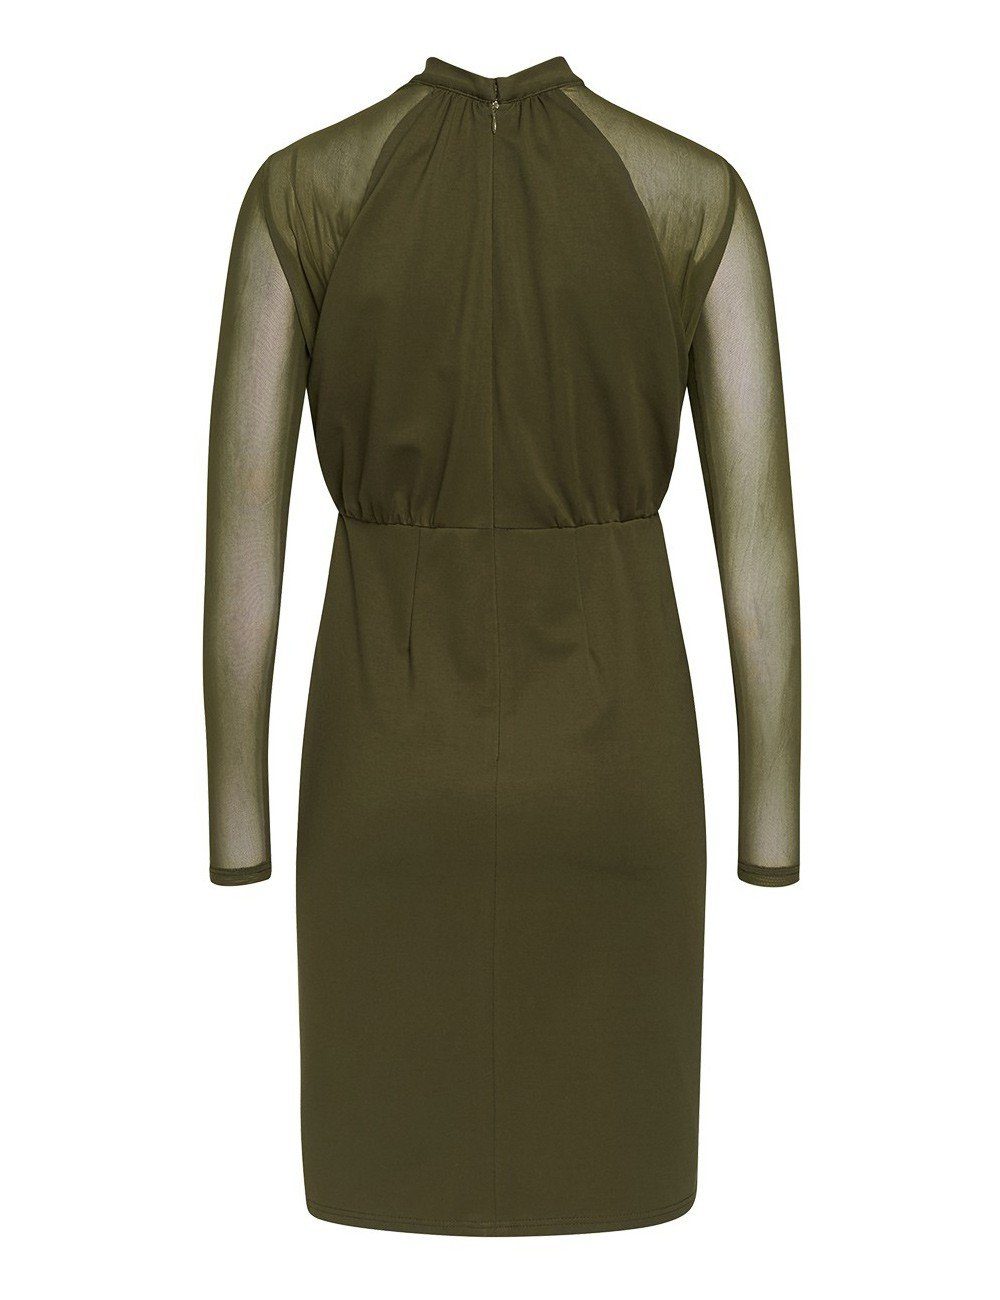 Brigitte von Boch Kleid olivgrün Sommerkleid Sainte-Croix